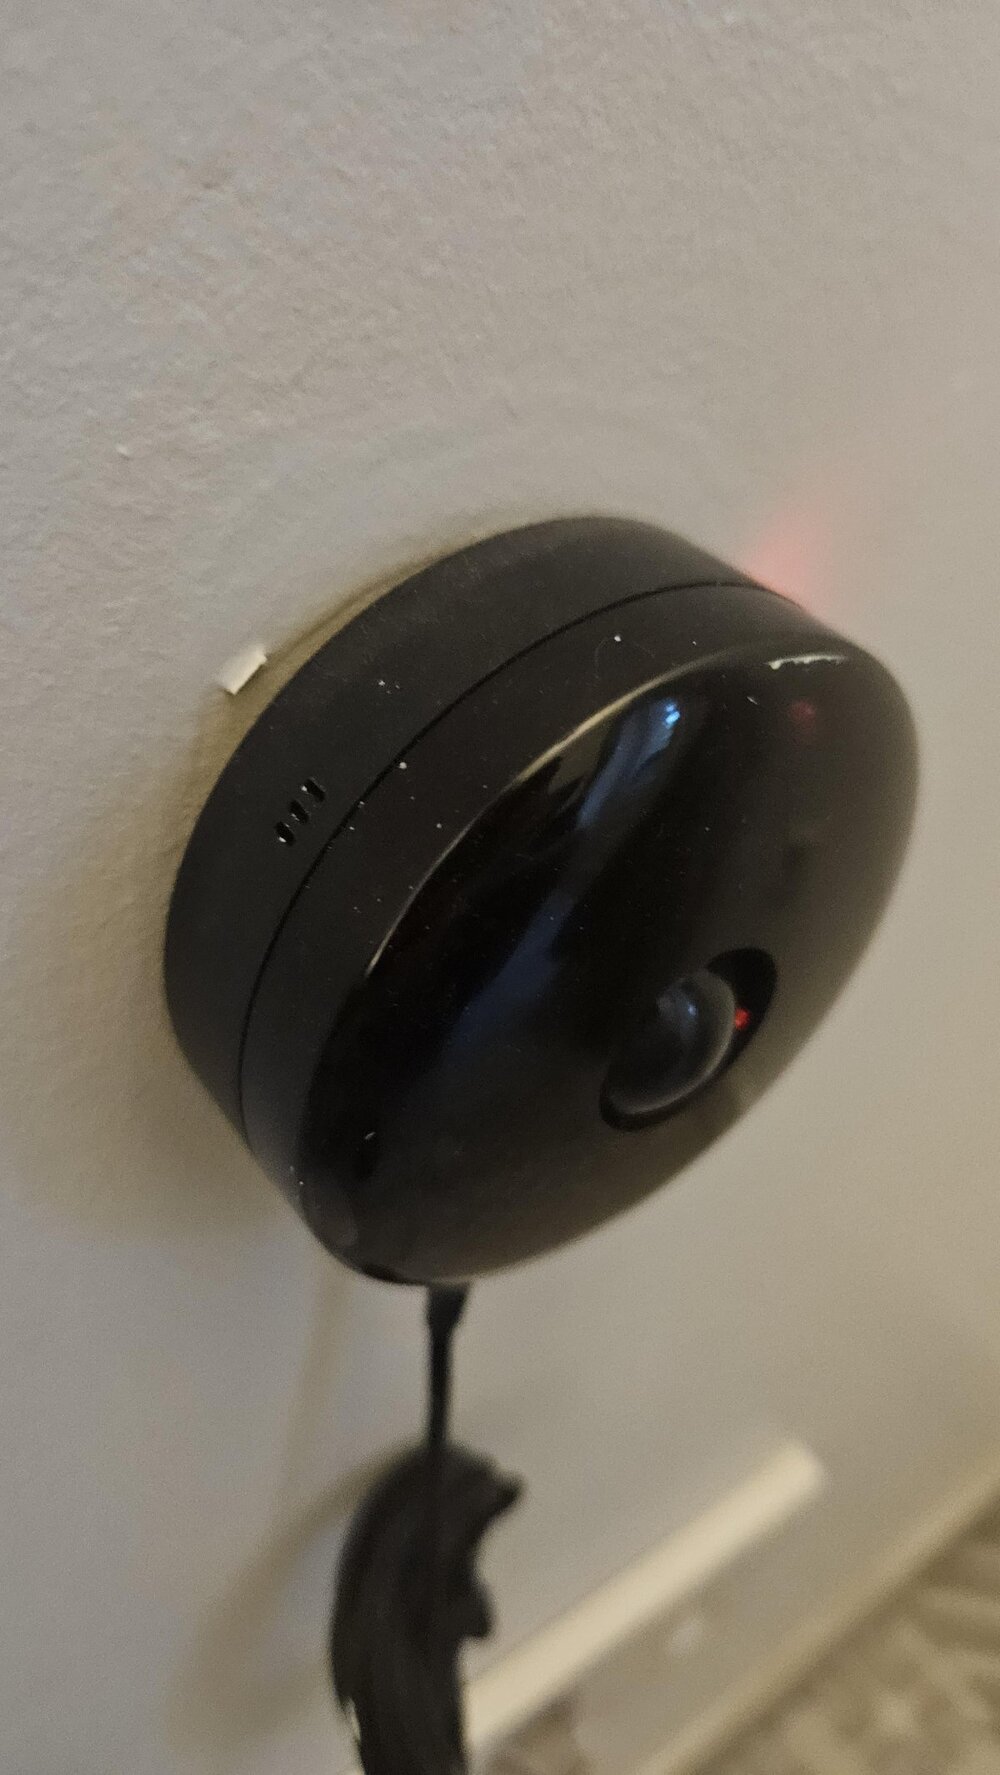 «Круглое чёрное электронное устройство на стене в комнате. Шарик в центре немного двигается»